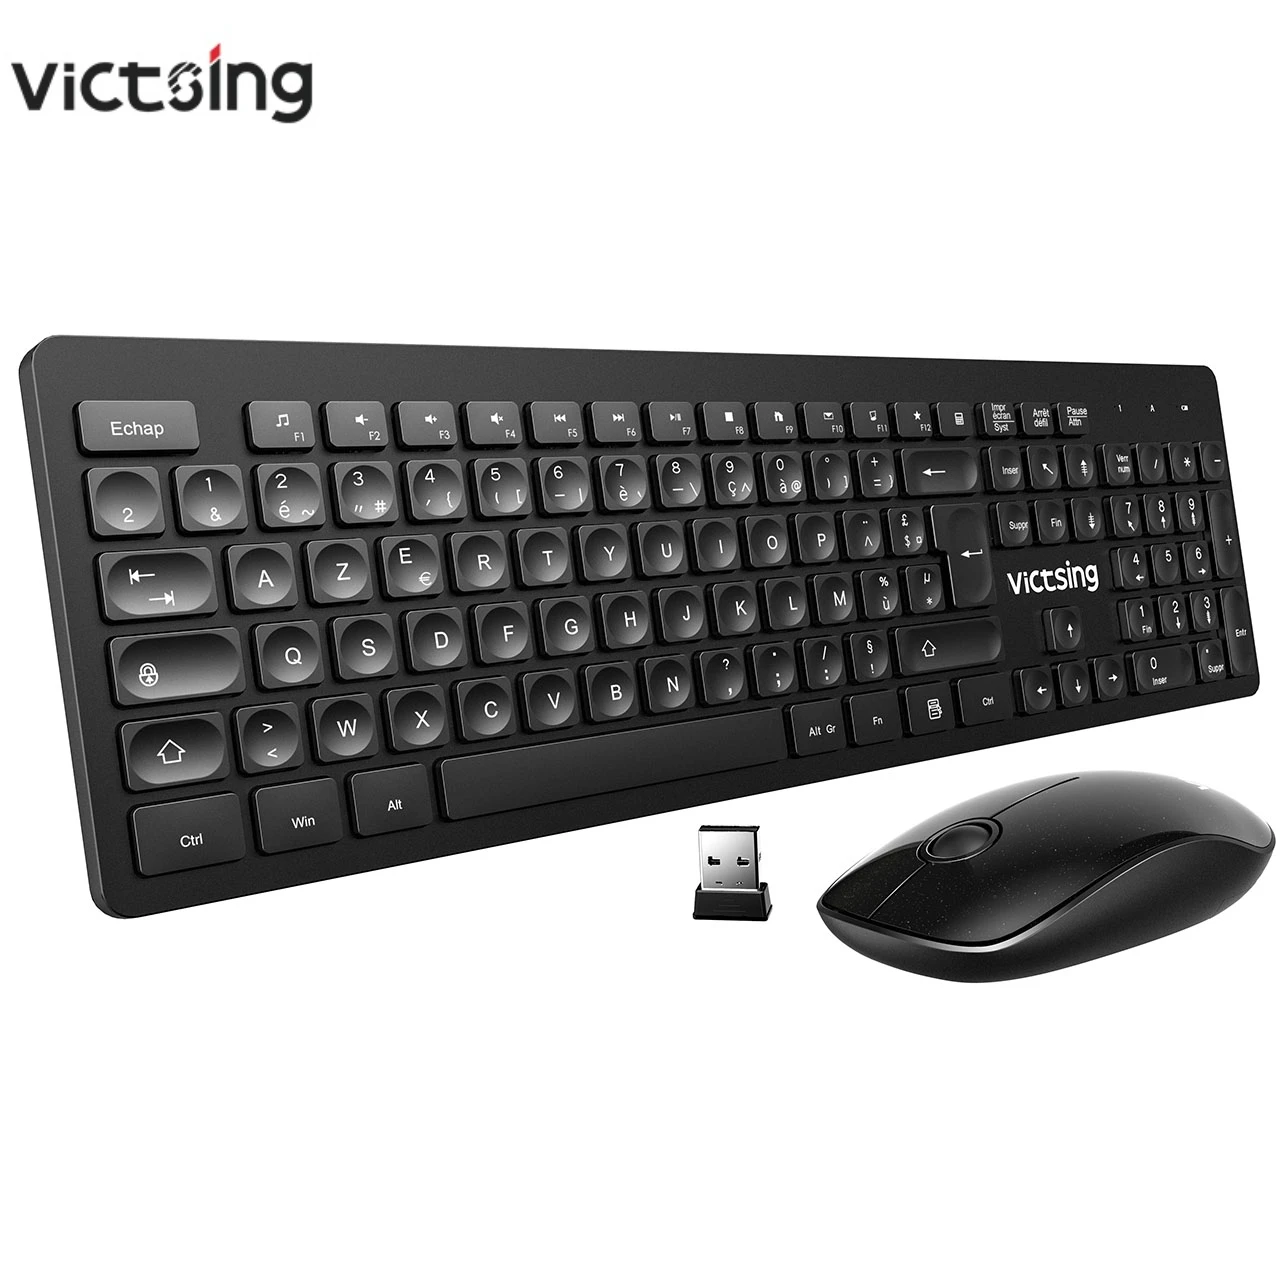 

VicTsing ультра-тонкая USB клавиатура Бесшумная мышь набор водопадающие клавиши 12 быстрых клавиш 2,4 ГГц беспроводное соединение для ПК ноутбука